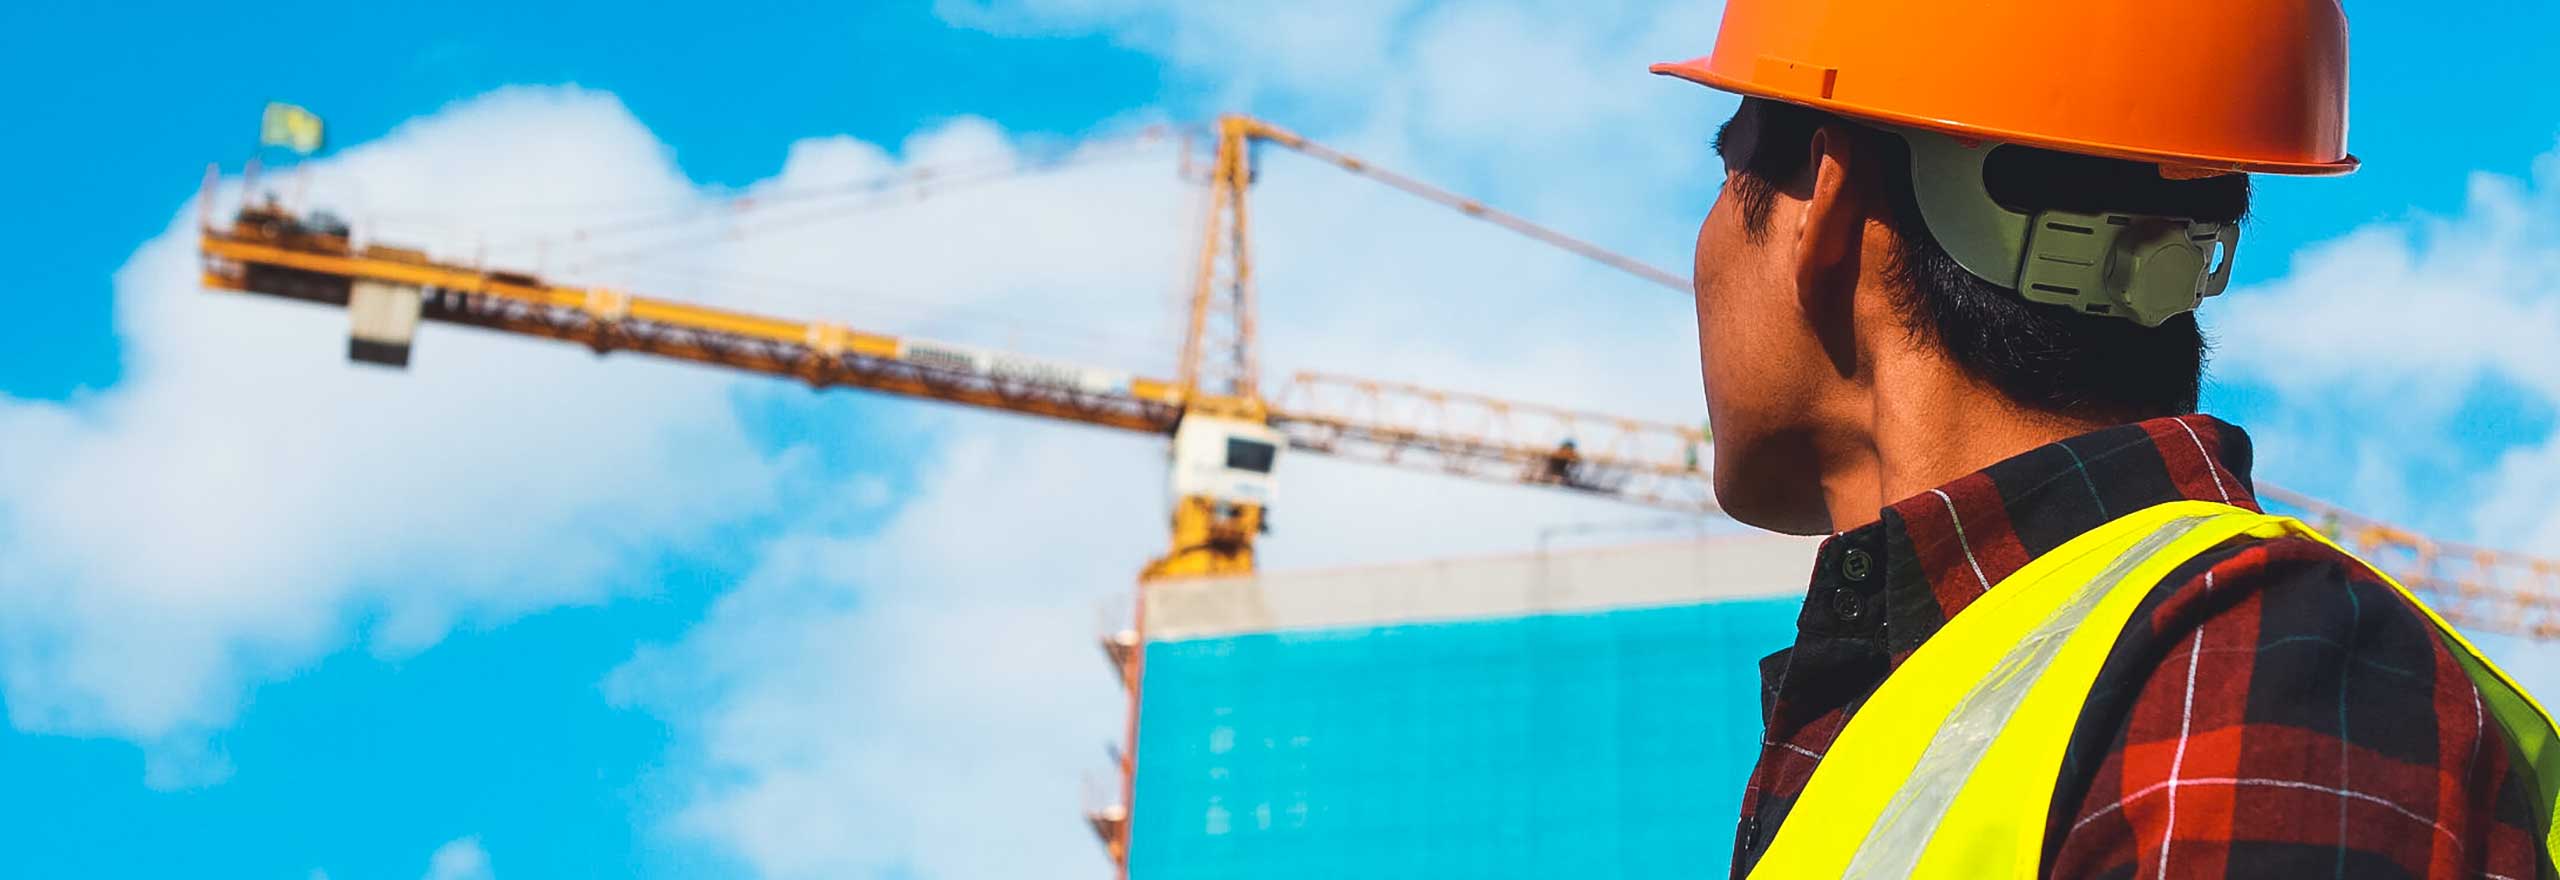 Ein Bauarbeiter schaut auf einen Kran